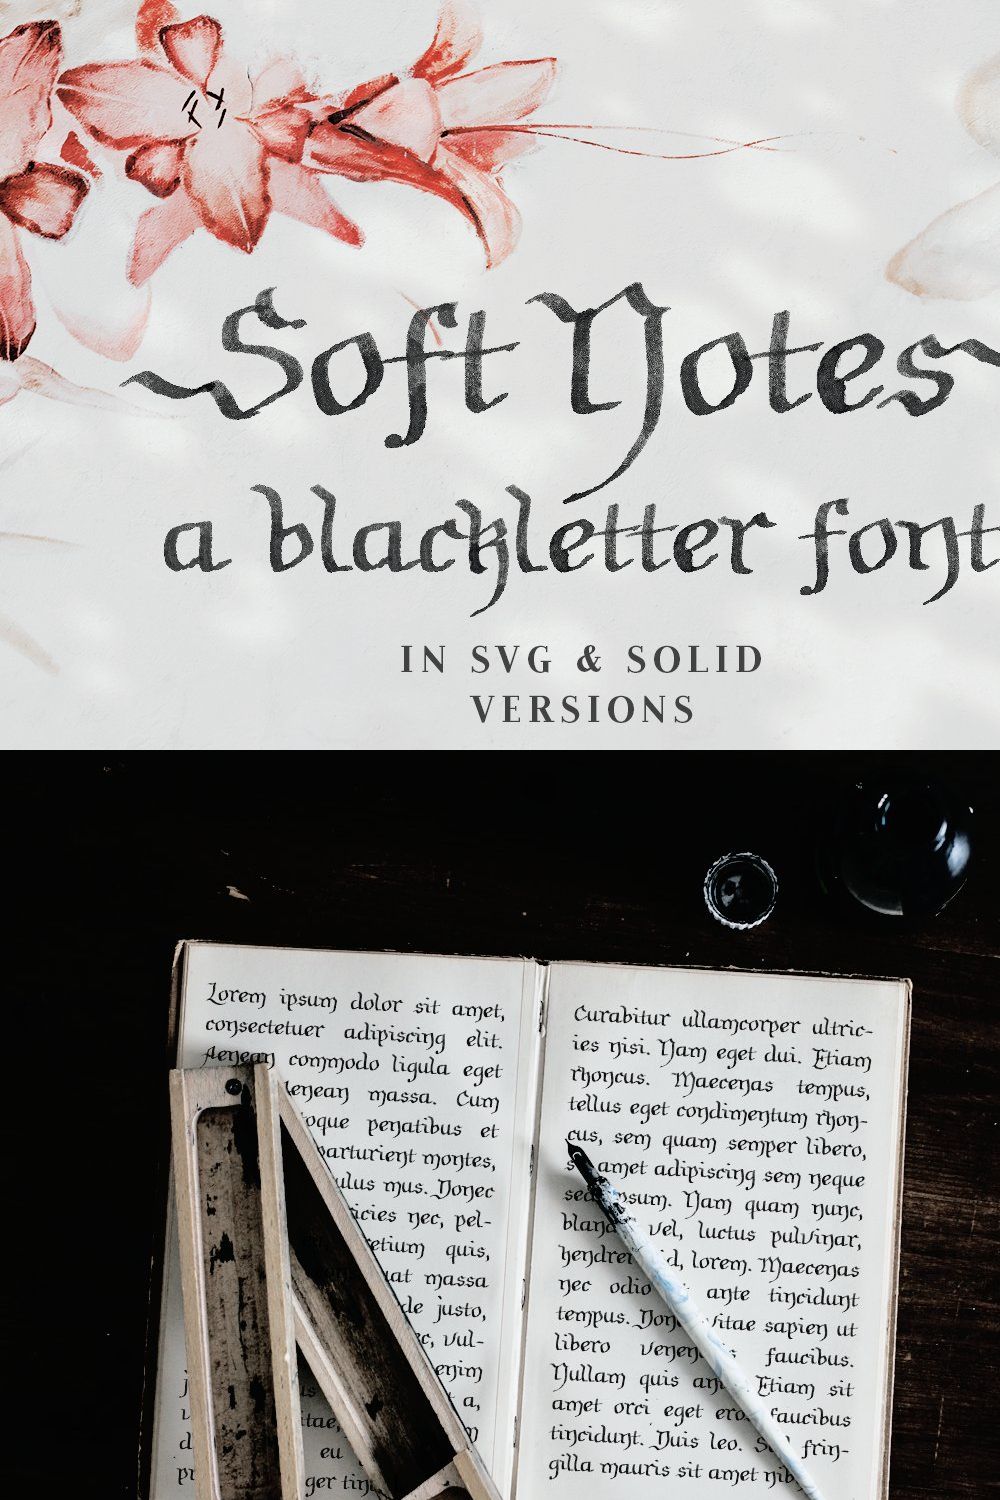 Soft Notes SVG blackletter font pinterest preview image.